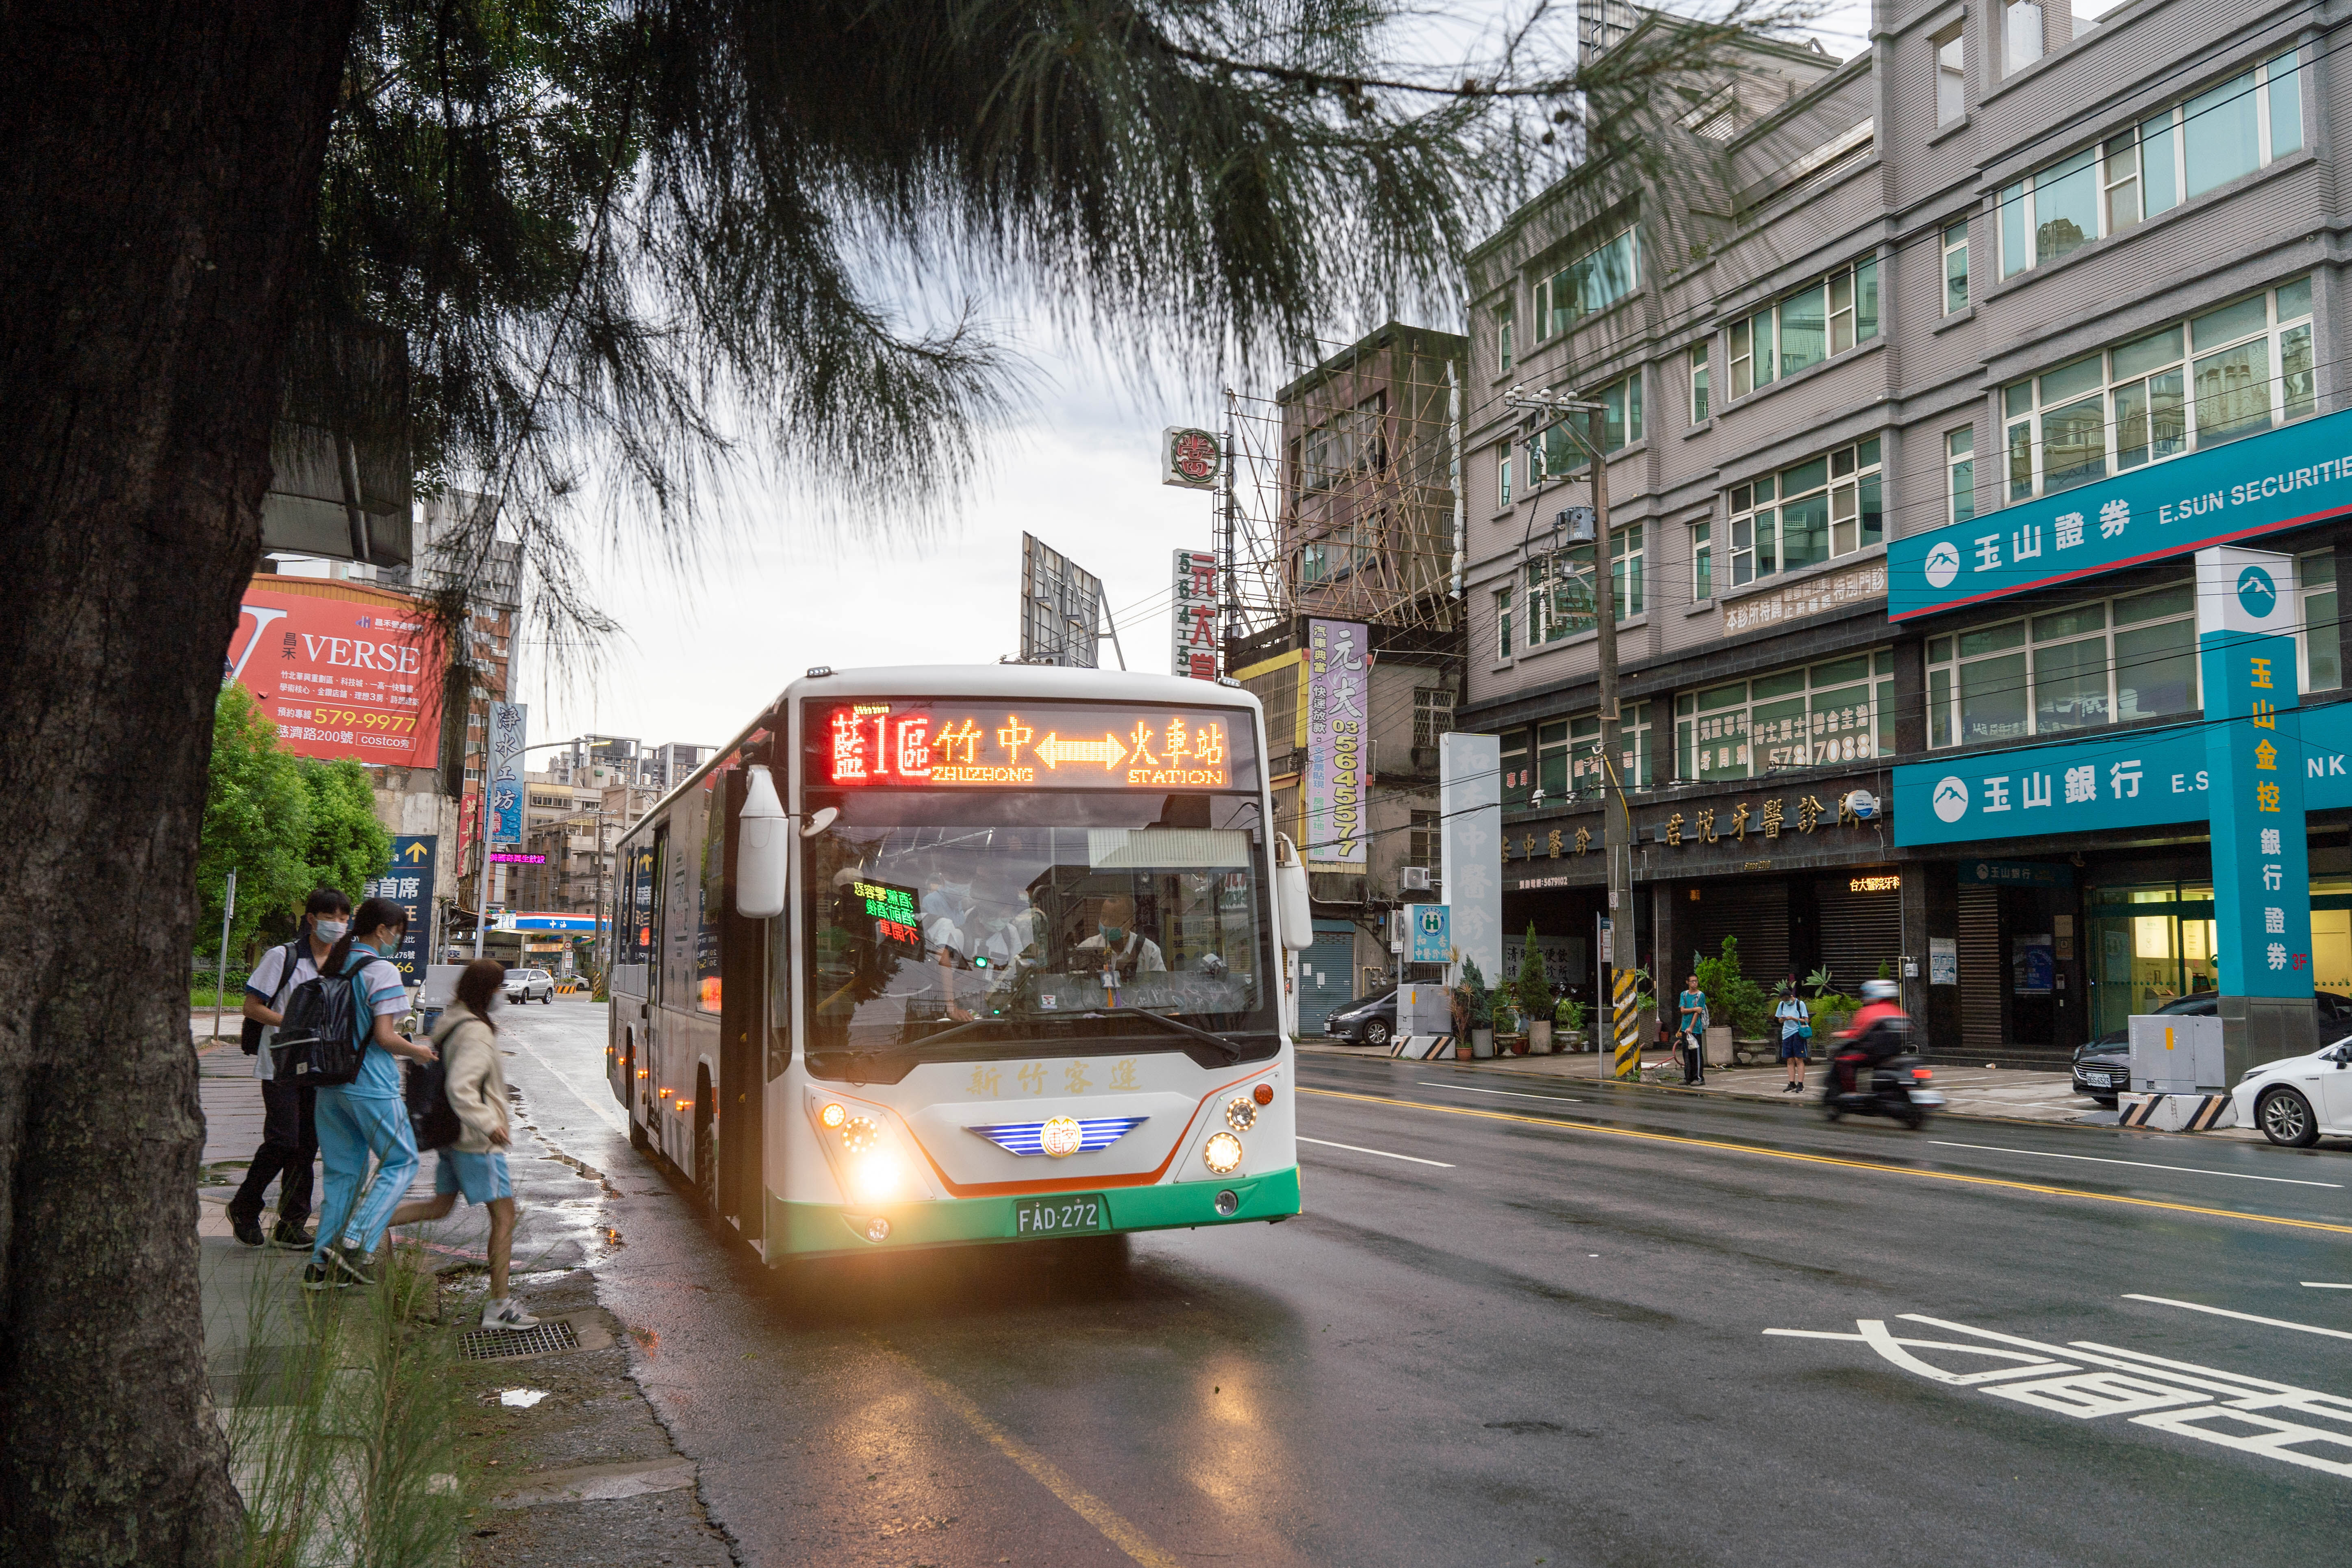 竹市藍1區公車1/6起每日增6班、尖峰時間縮短每10-15分鐘一班。